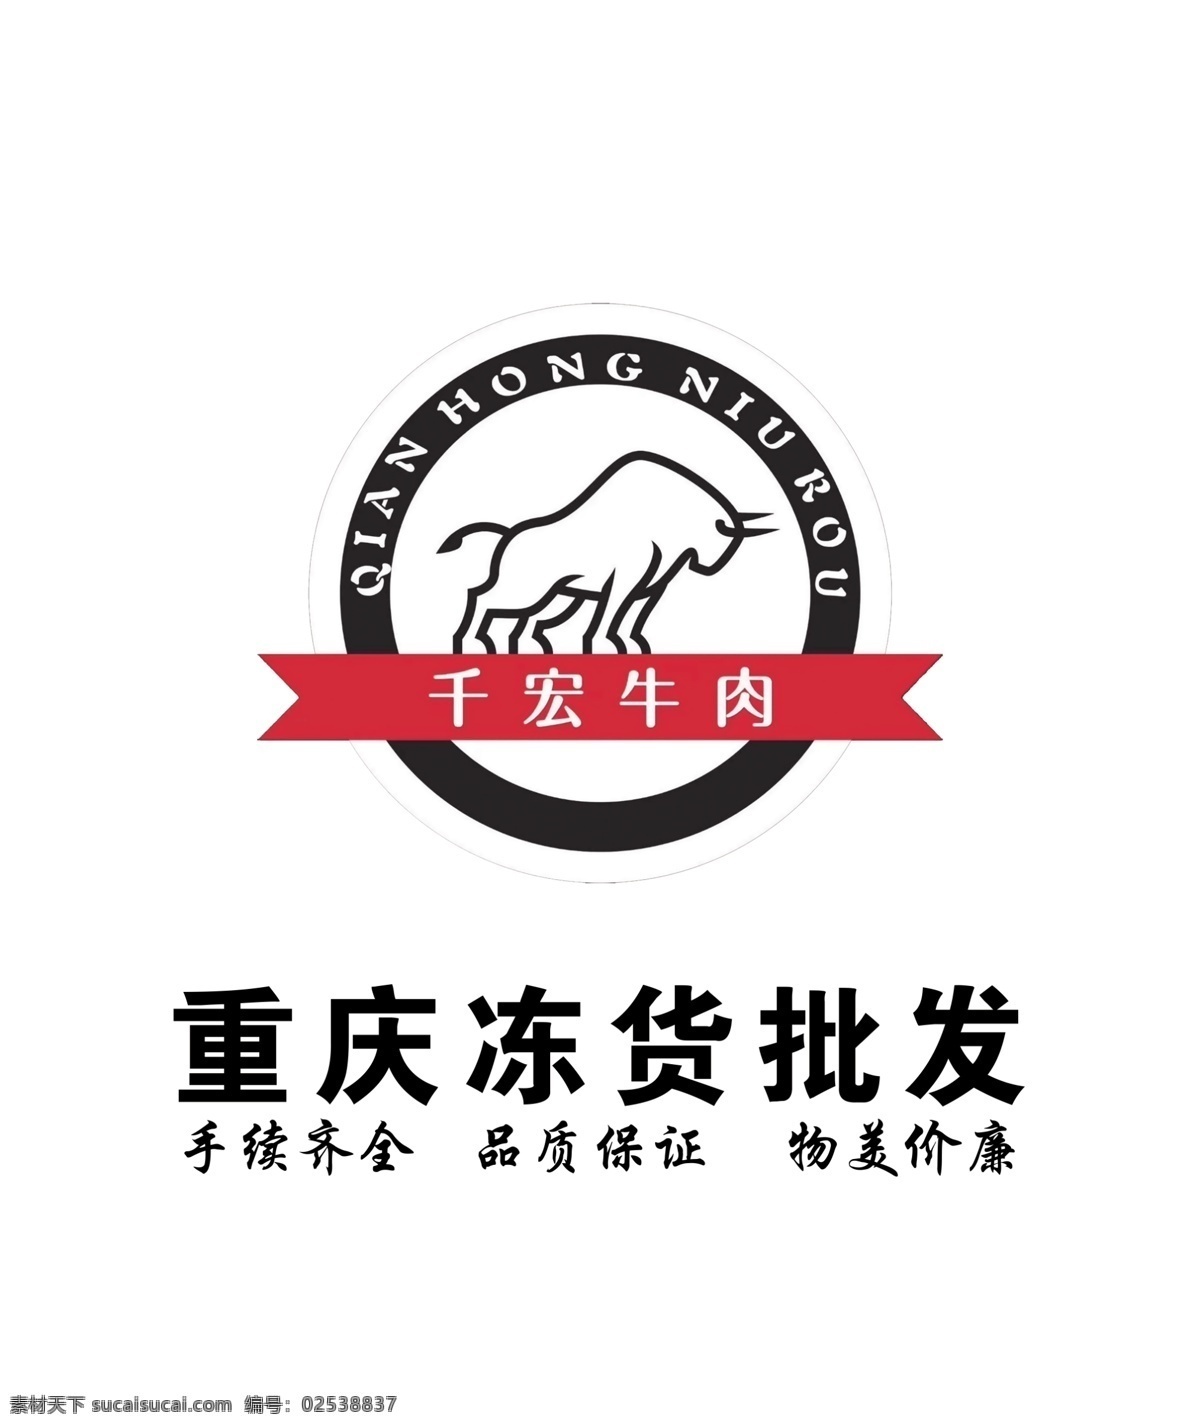 千宏牛肉图片 千宏牛肉 logo 标志 牛卡通 牛素材 标志图标 企业